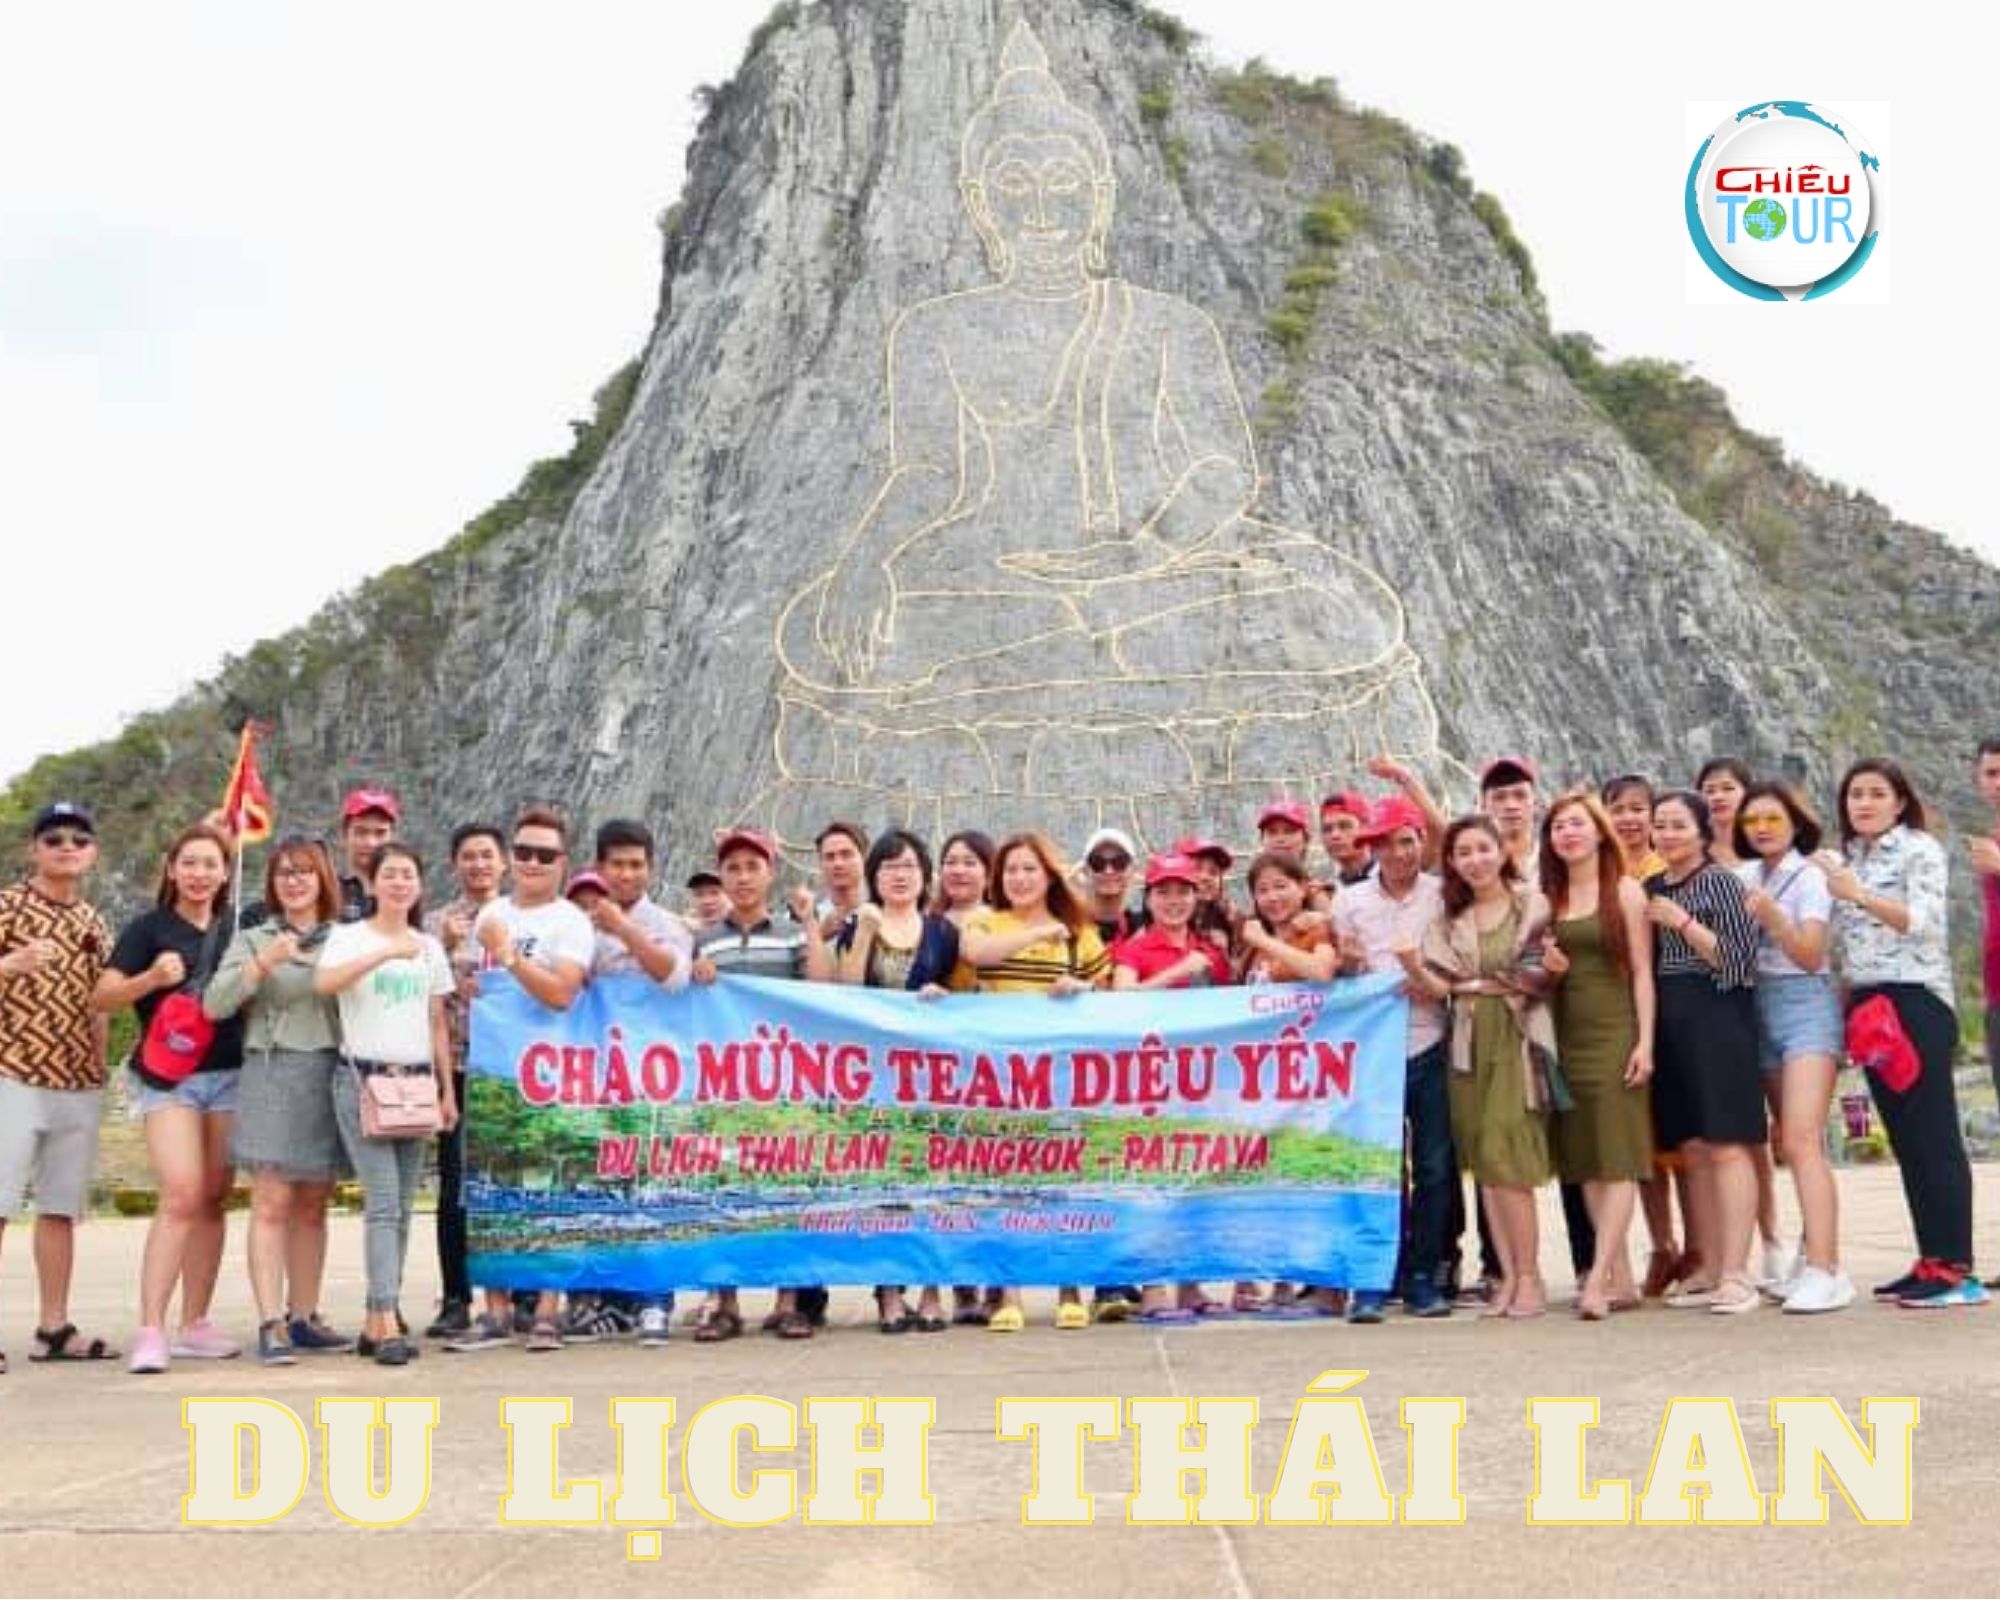 Tour du lịch Thái Lan bao nhiêu tiền